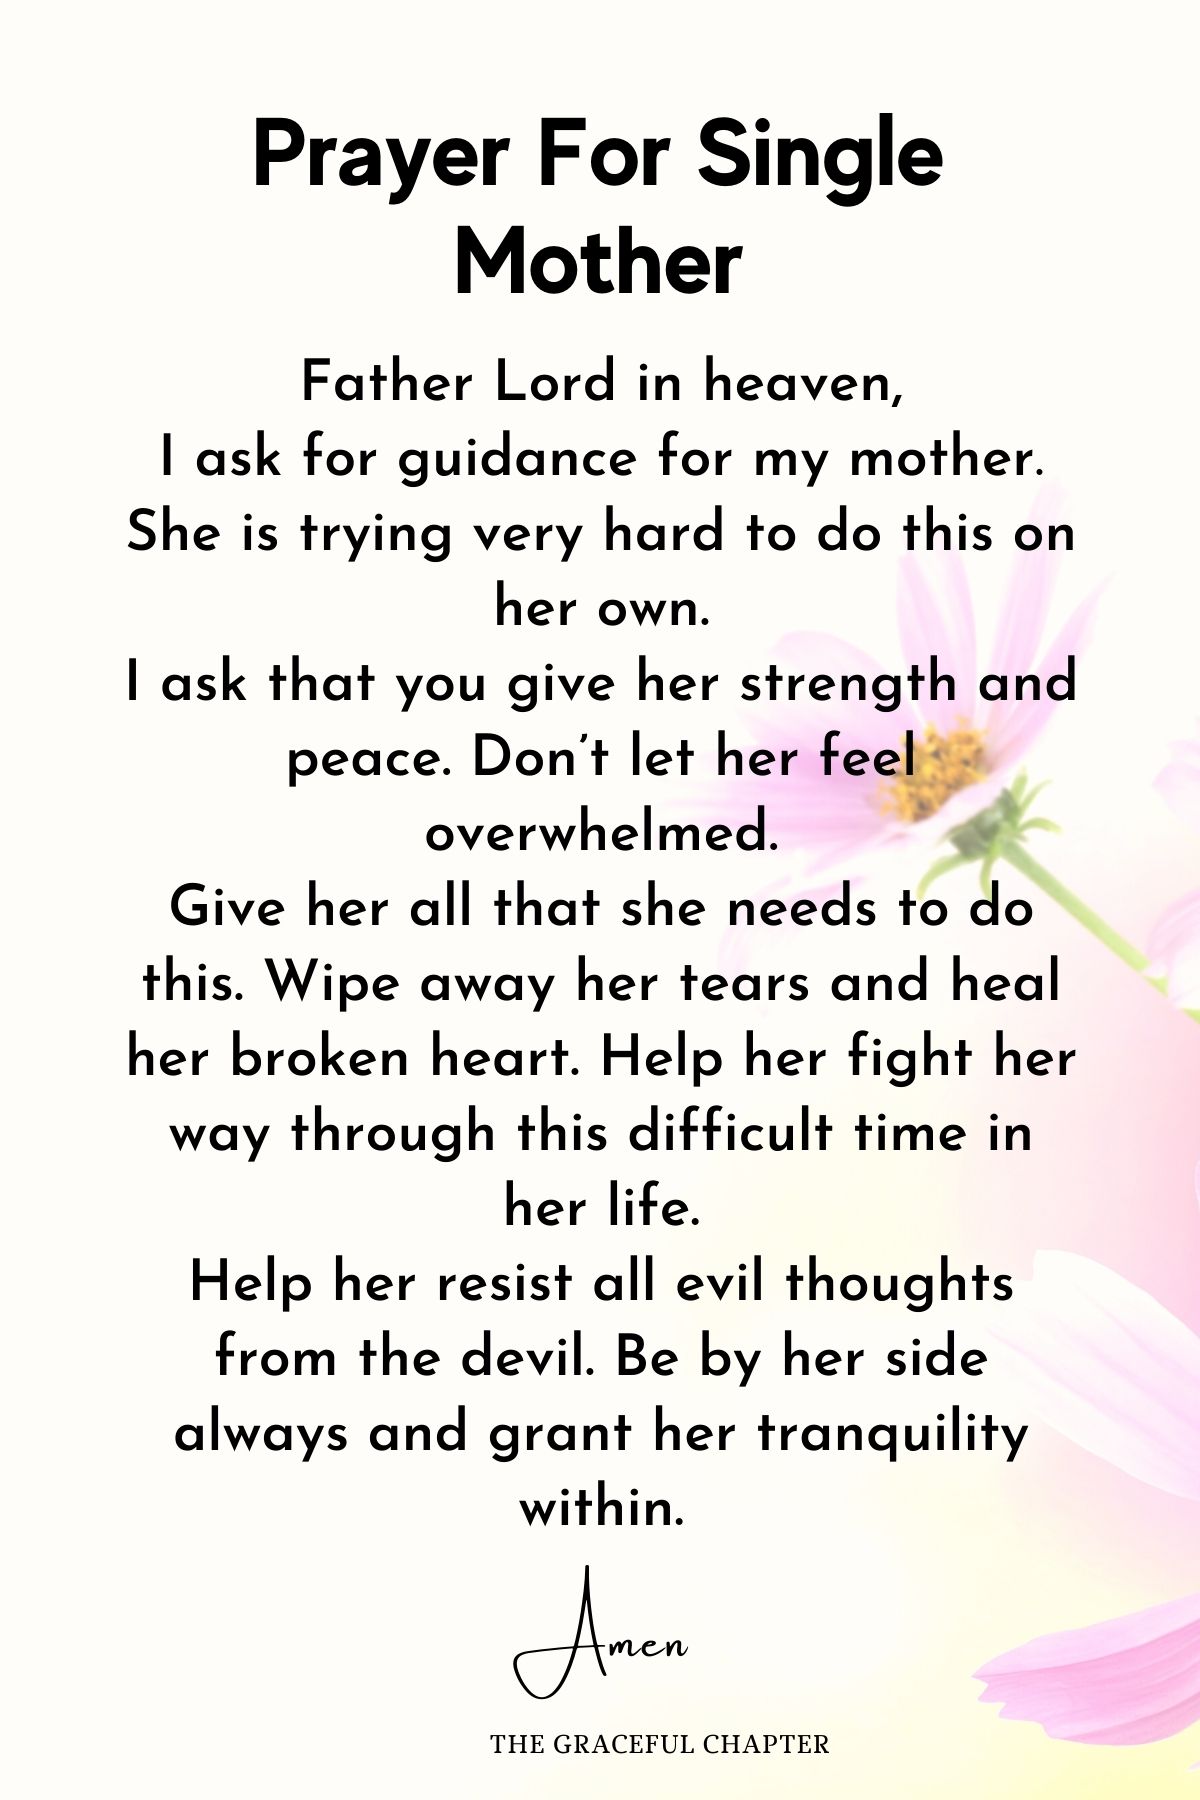 Prayer for single mother